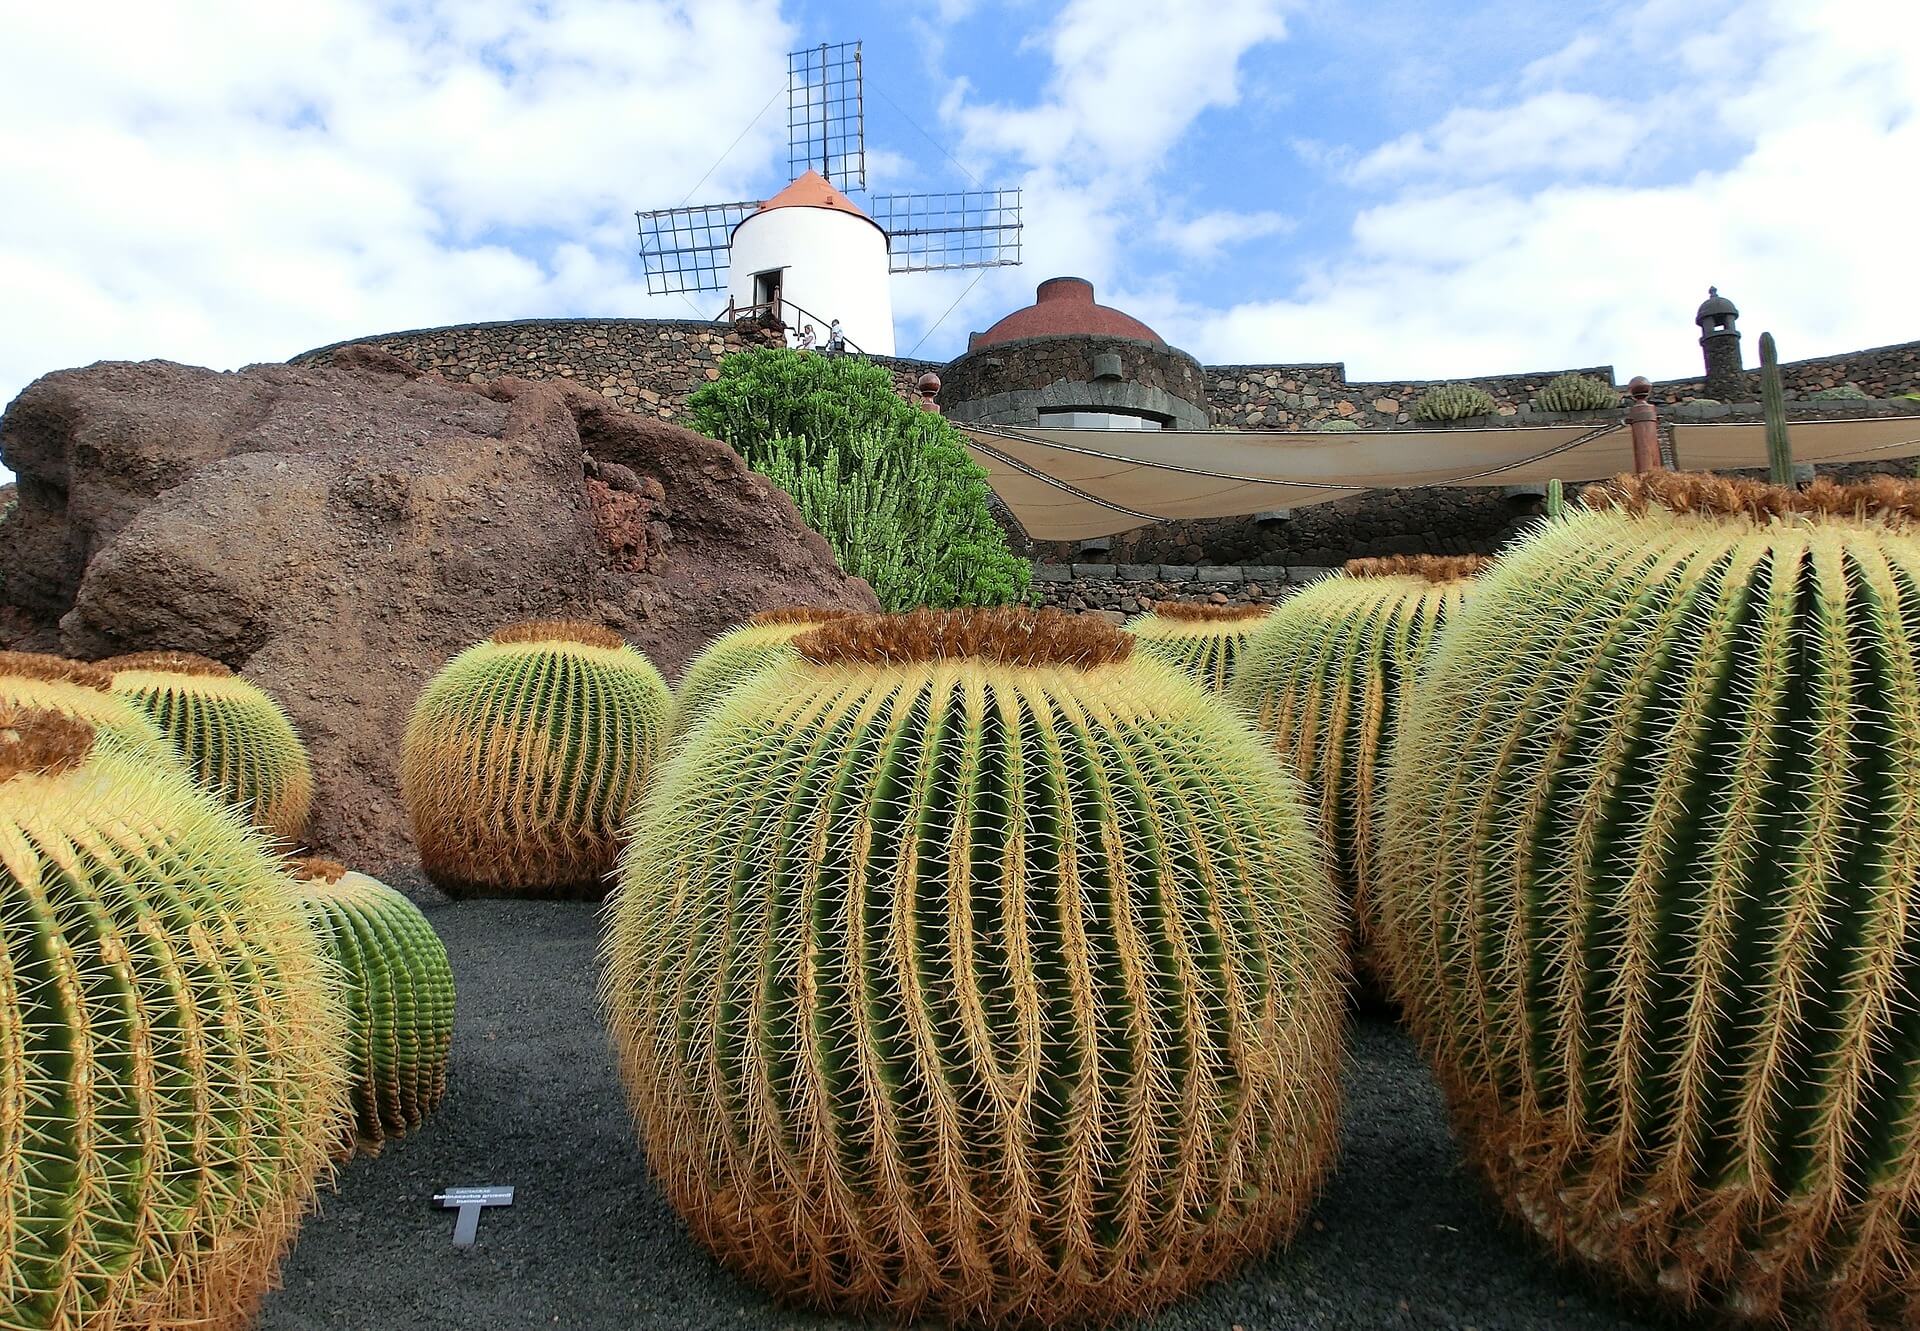 Visit El Jardin de Cactus in Lanzarote